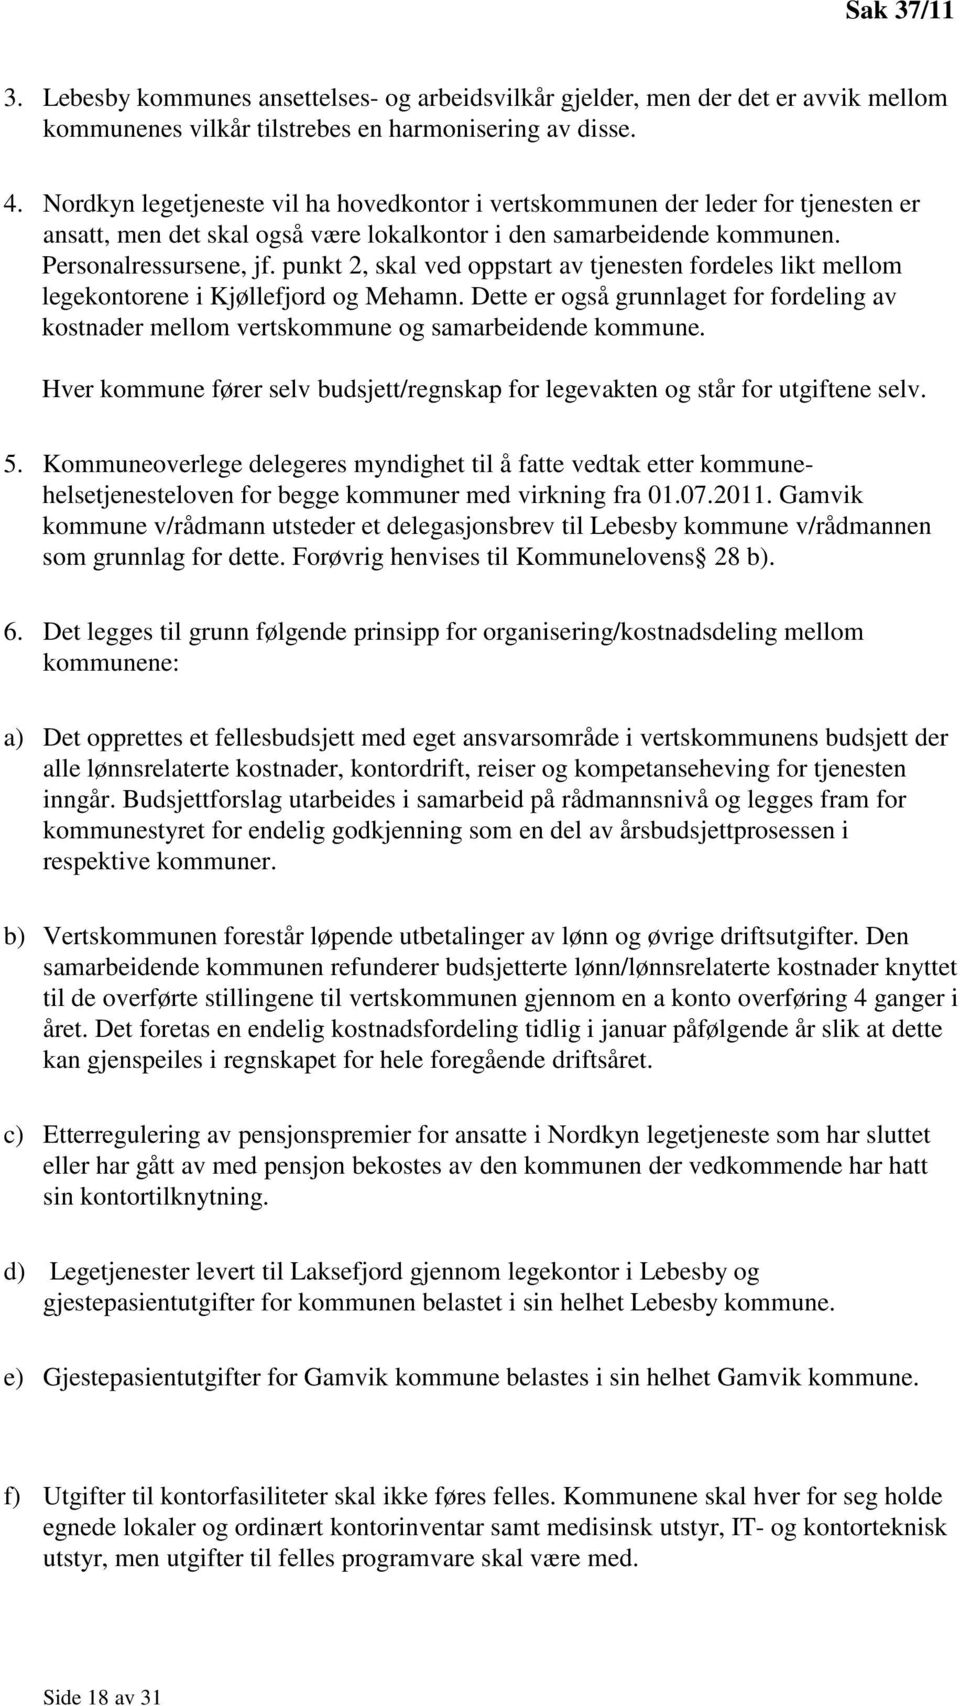 punkt 2, skal ved oppstart av tjenesten fordeles likt mellom legekontorene i Kjøllefjord og Mehamn. Dette er også grunnlaget for fordeling av kostnader mellom vertskommune og samarbeidende kommune.